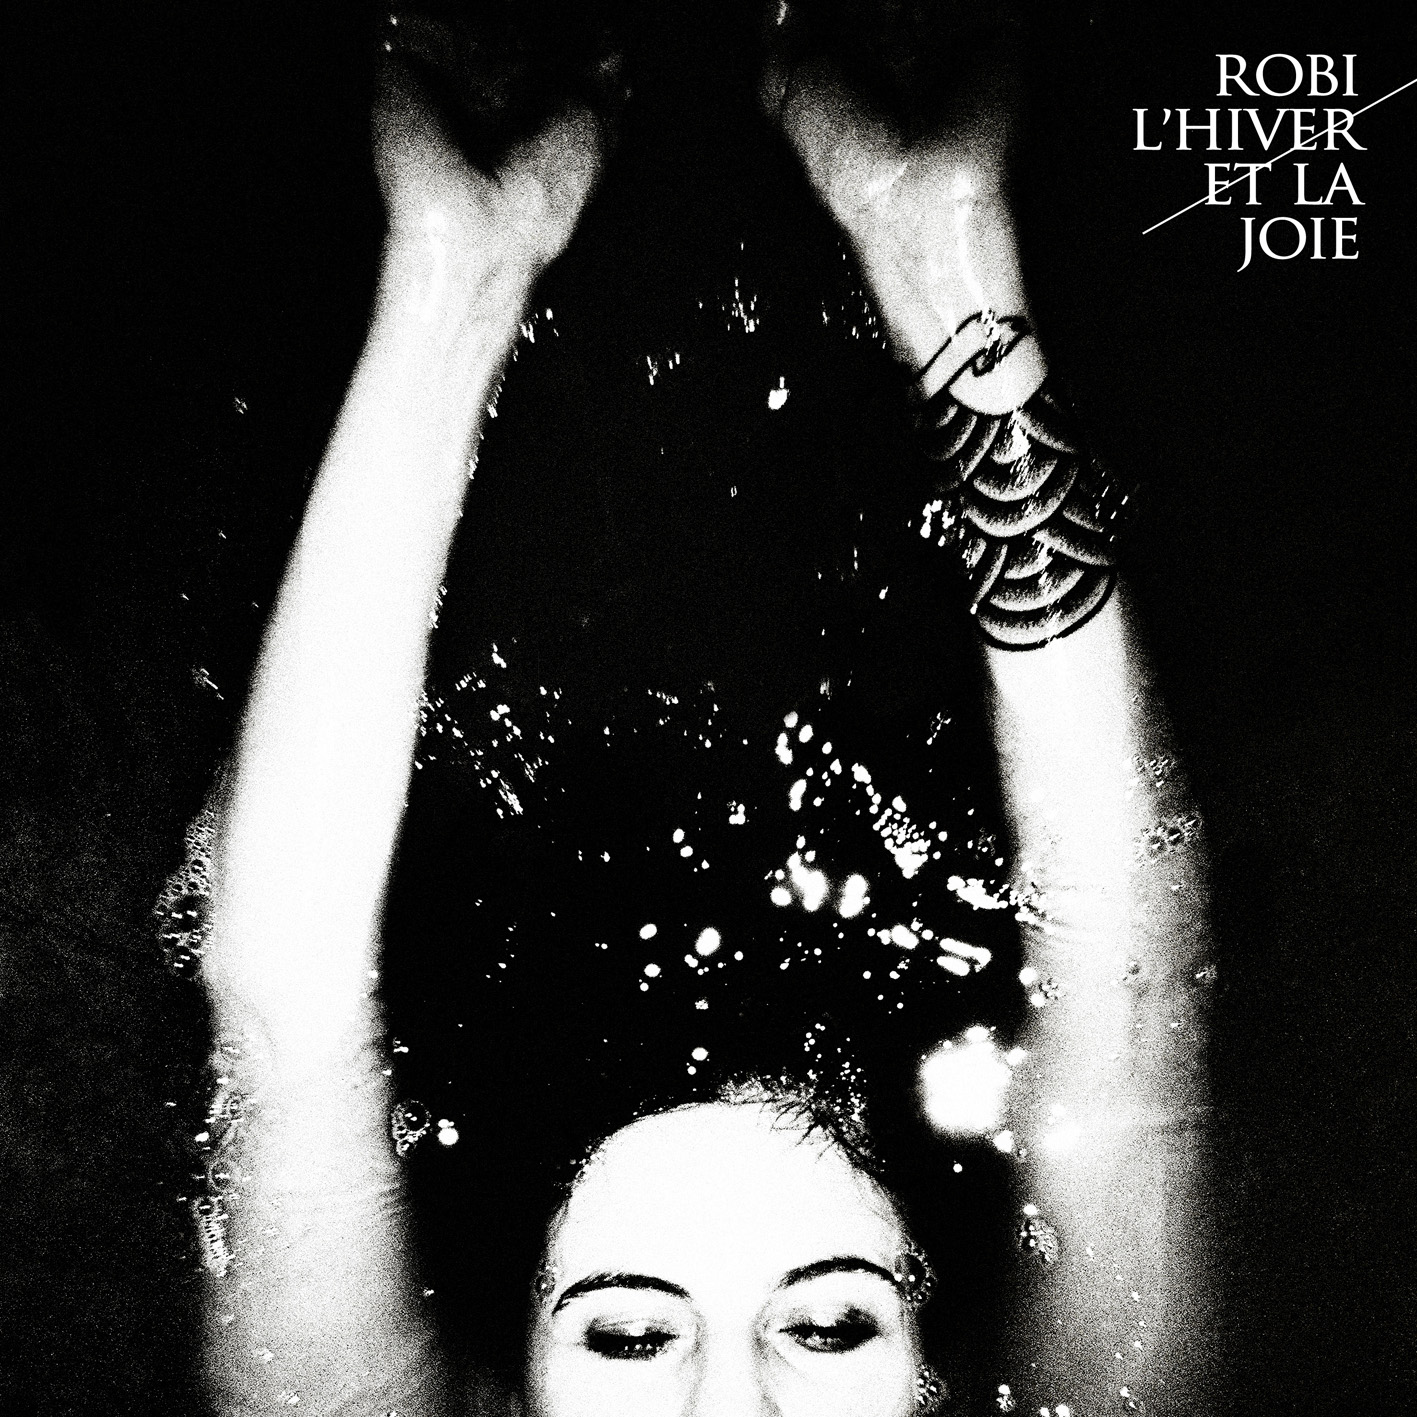 Robi – L'Hiver et la joie, premier album le 4 février 2013